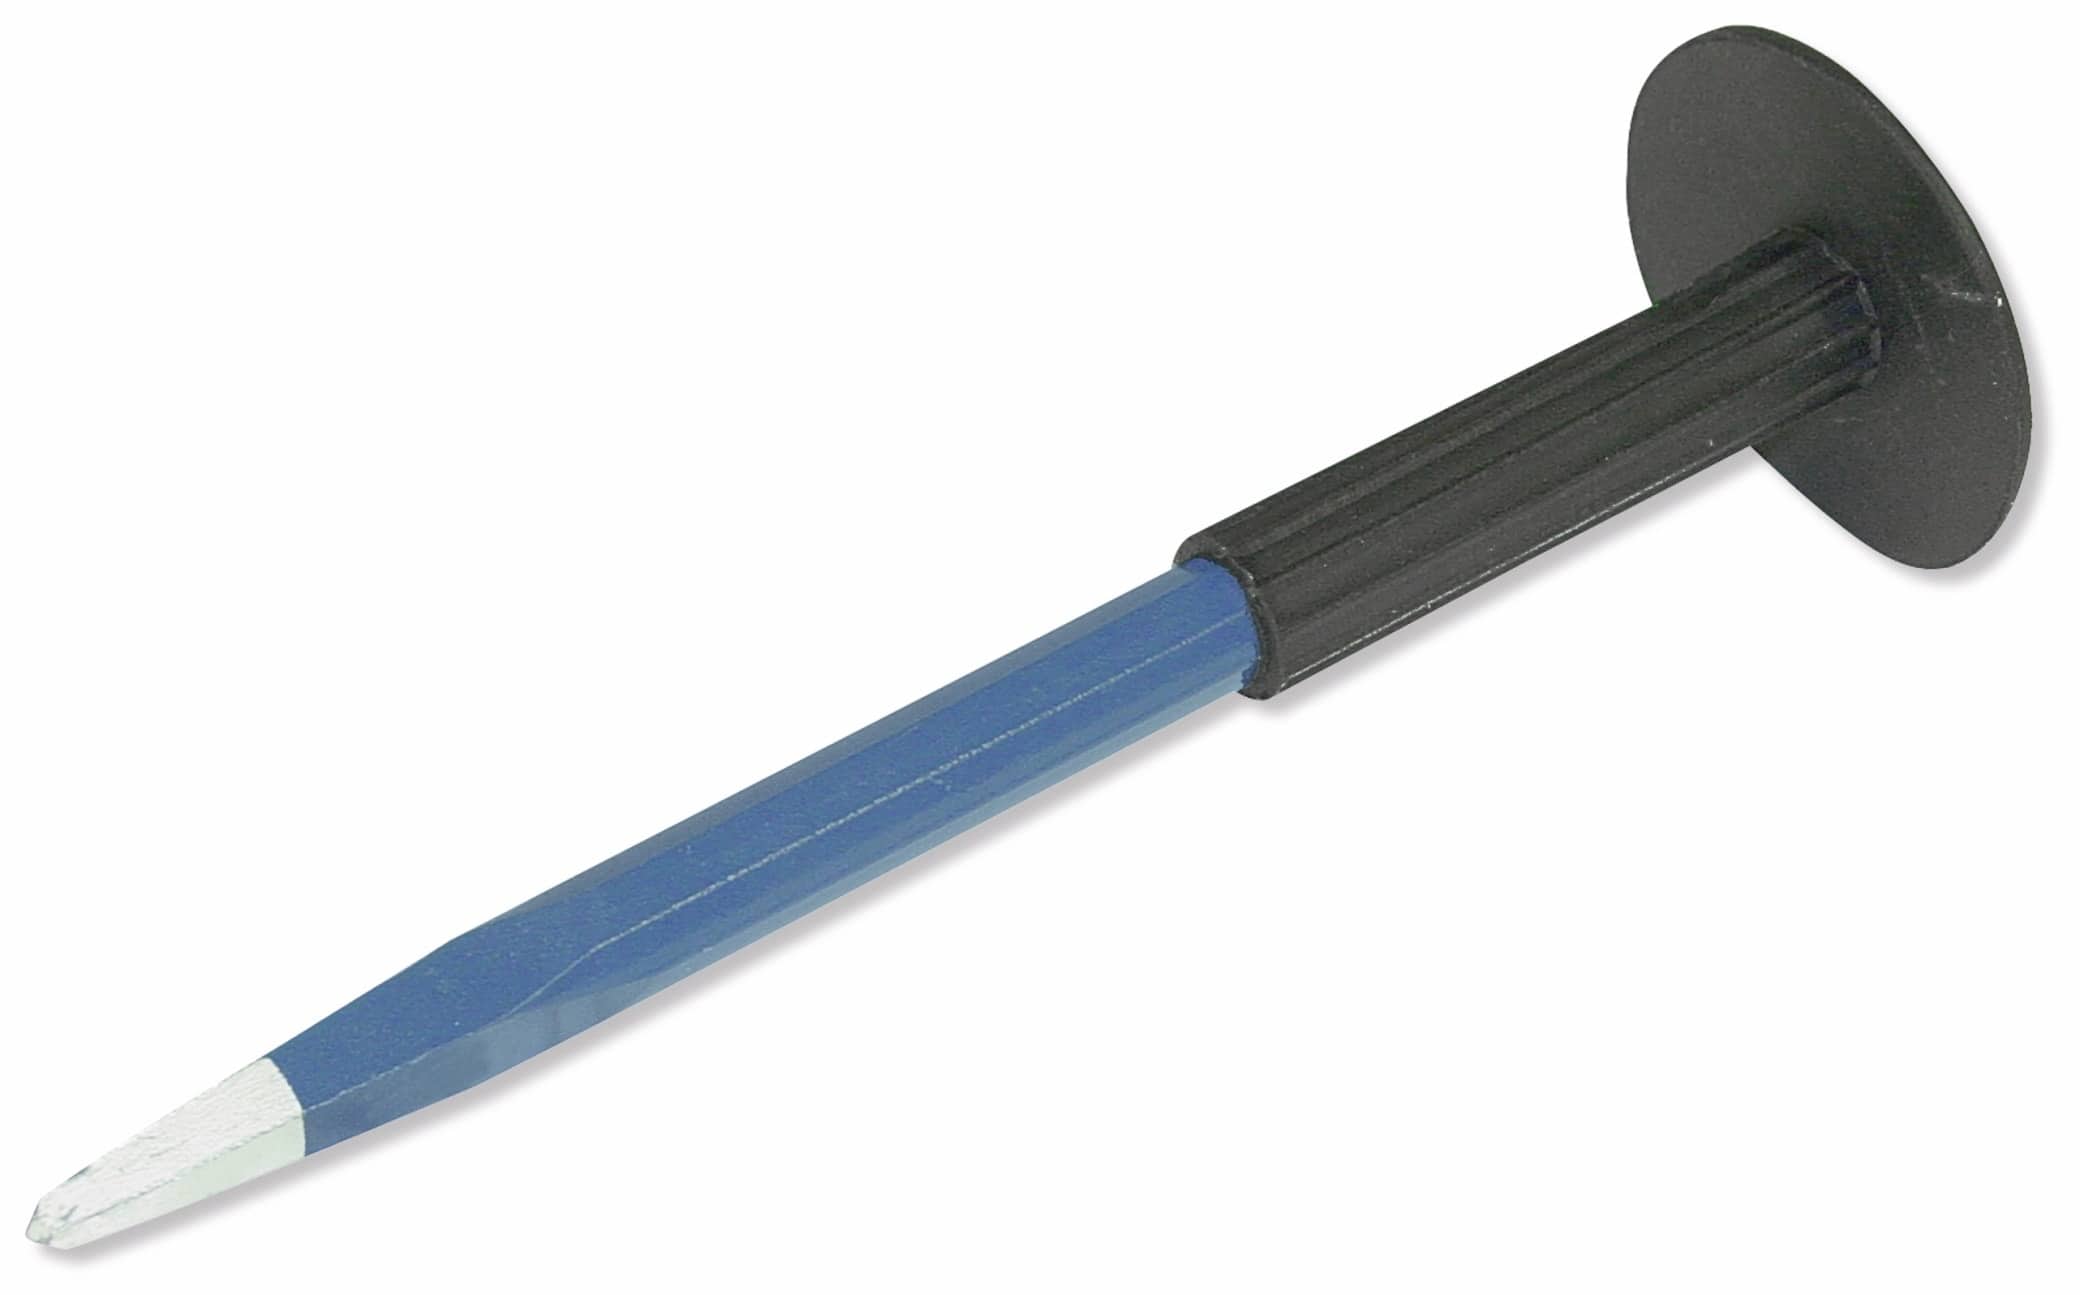 Tooltech Spitzmeißel mit Handschutz, 250 mm, blau/schwarz